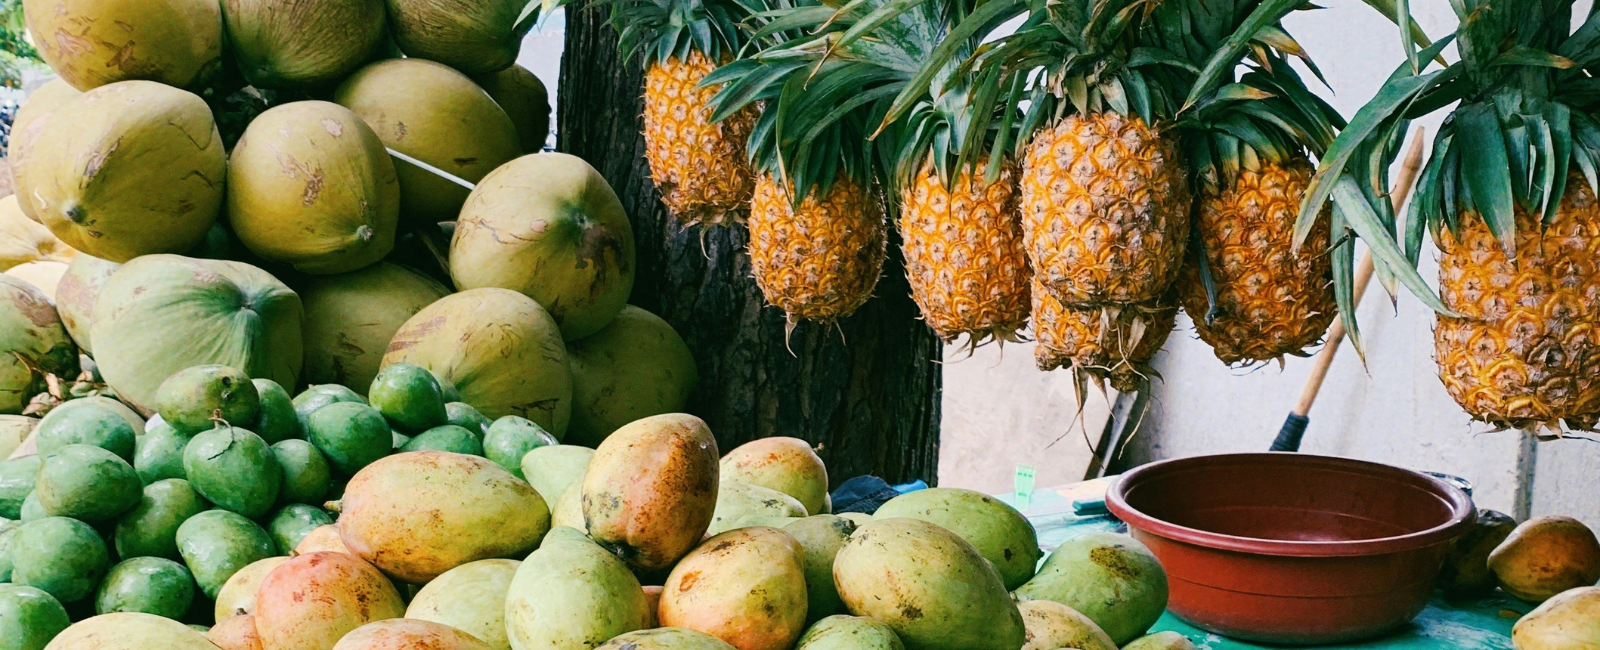 Filipino mangoes at a market stall